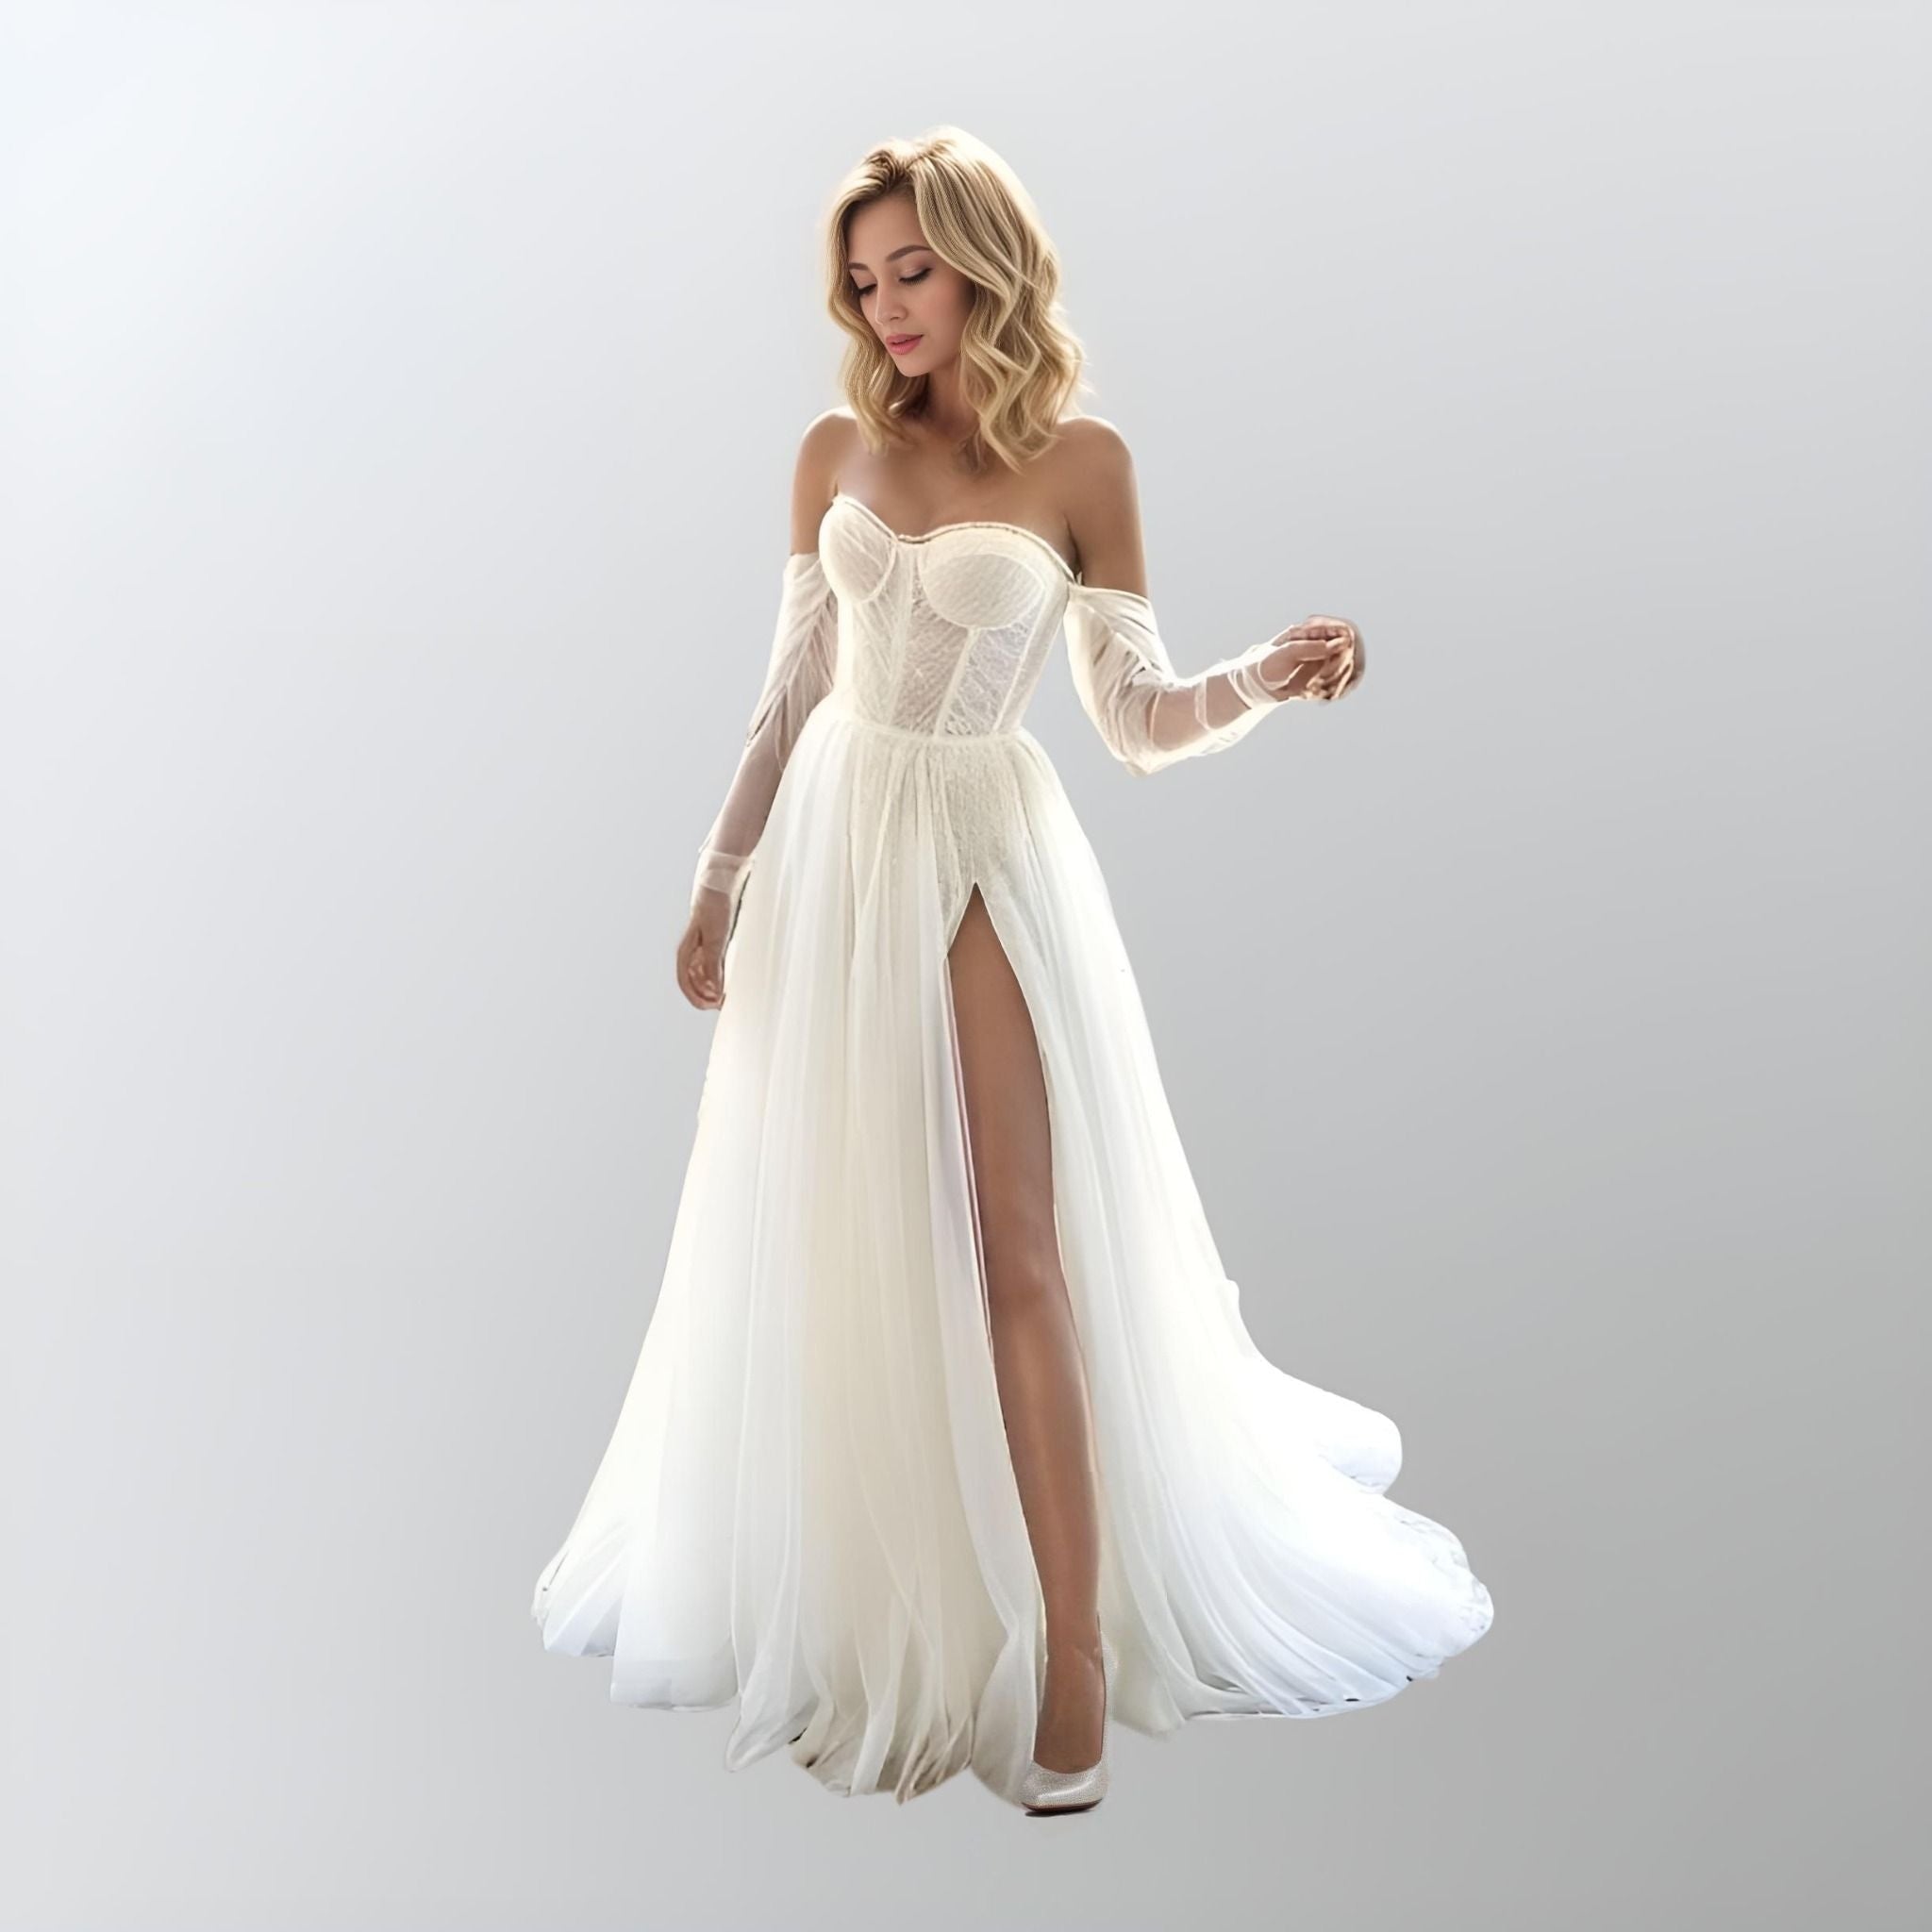 http://lulabridal.com/cdn/shop/files/vivian-wedding-dress-120.jpg?v=1704238220